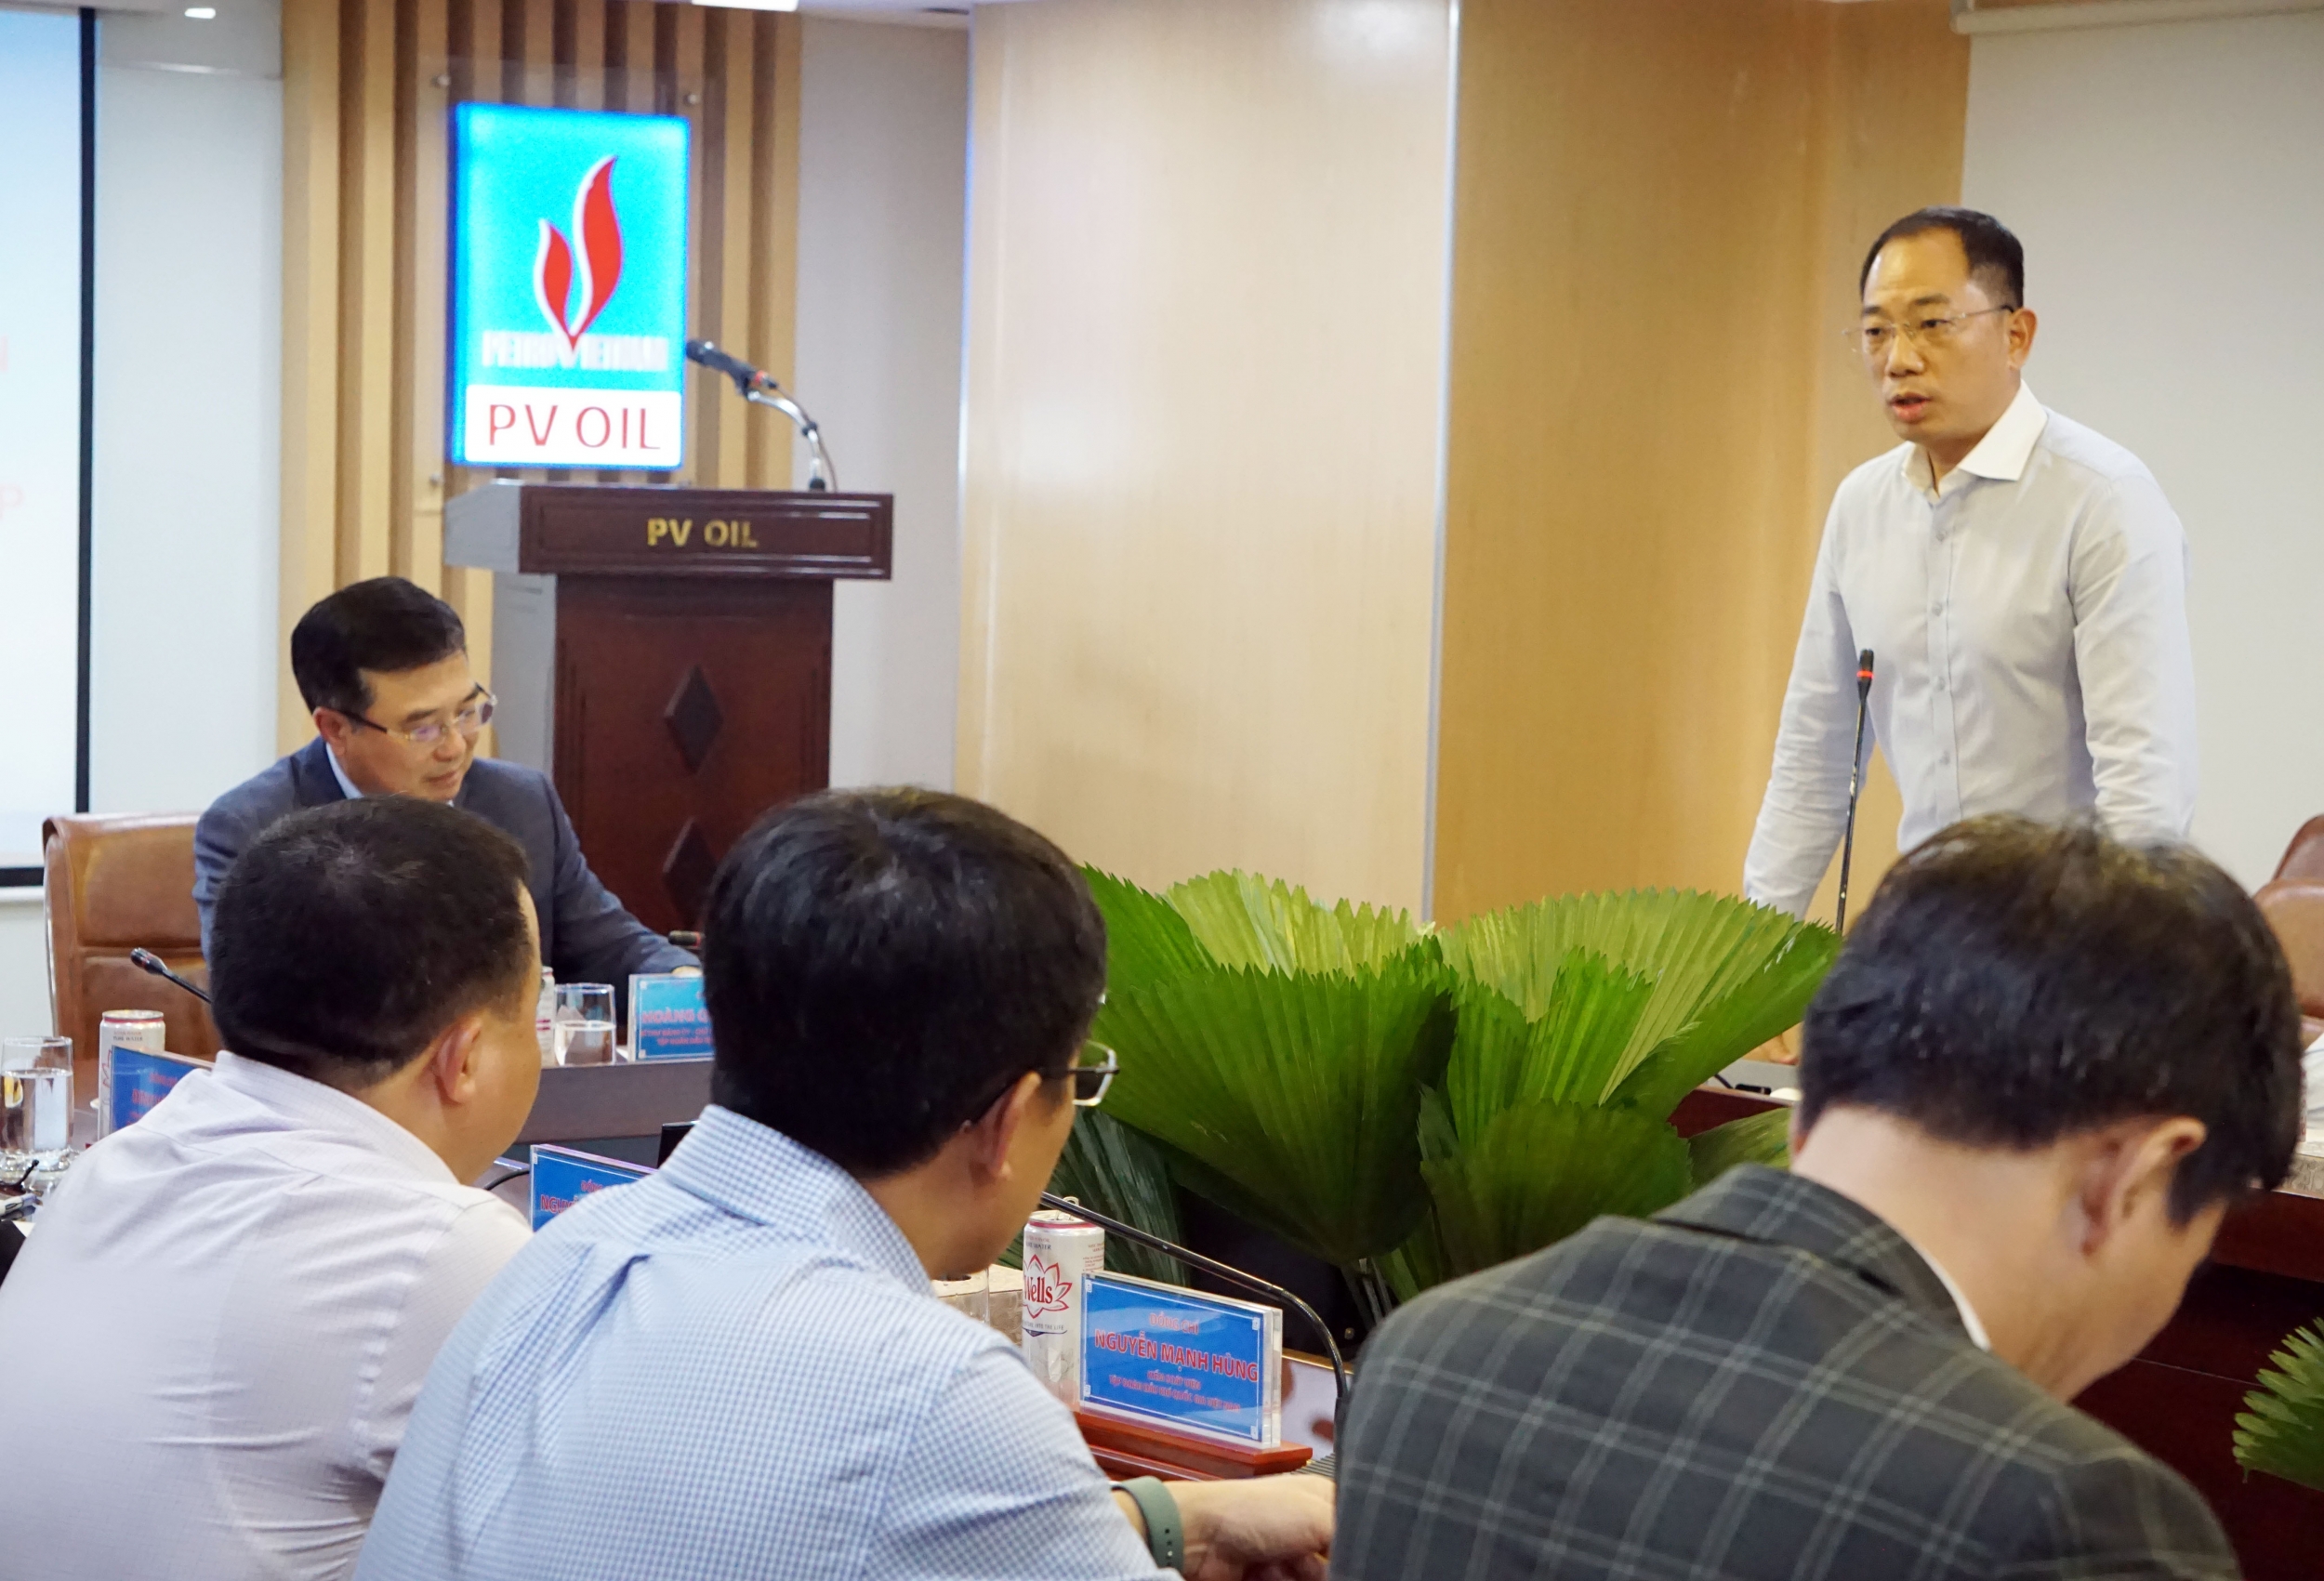 Đồng chí Cao Hoài Dương - Bí thư Đảng ủy, Chủ tịch HĐQT PVOIL báo cáo tại buổi làm việc